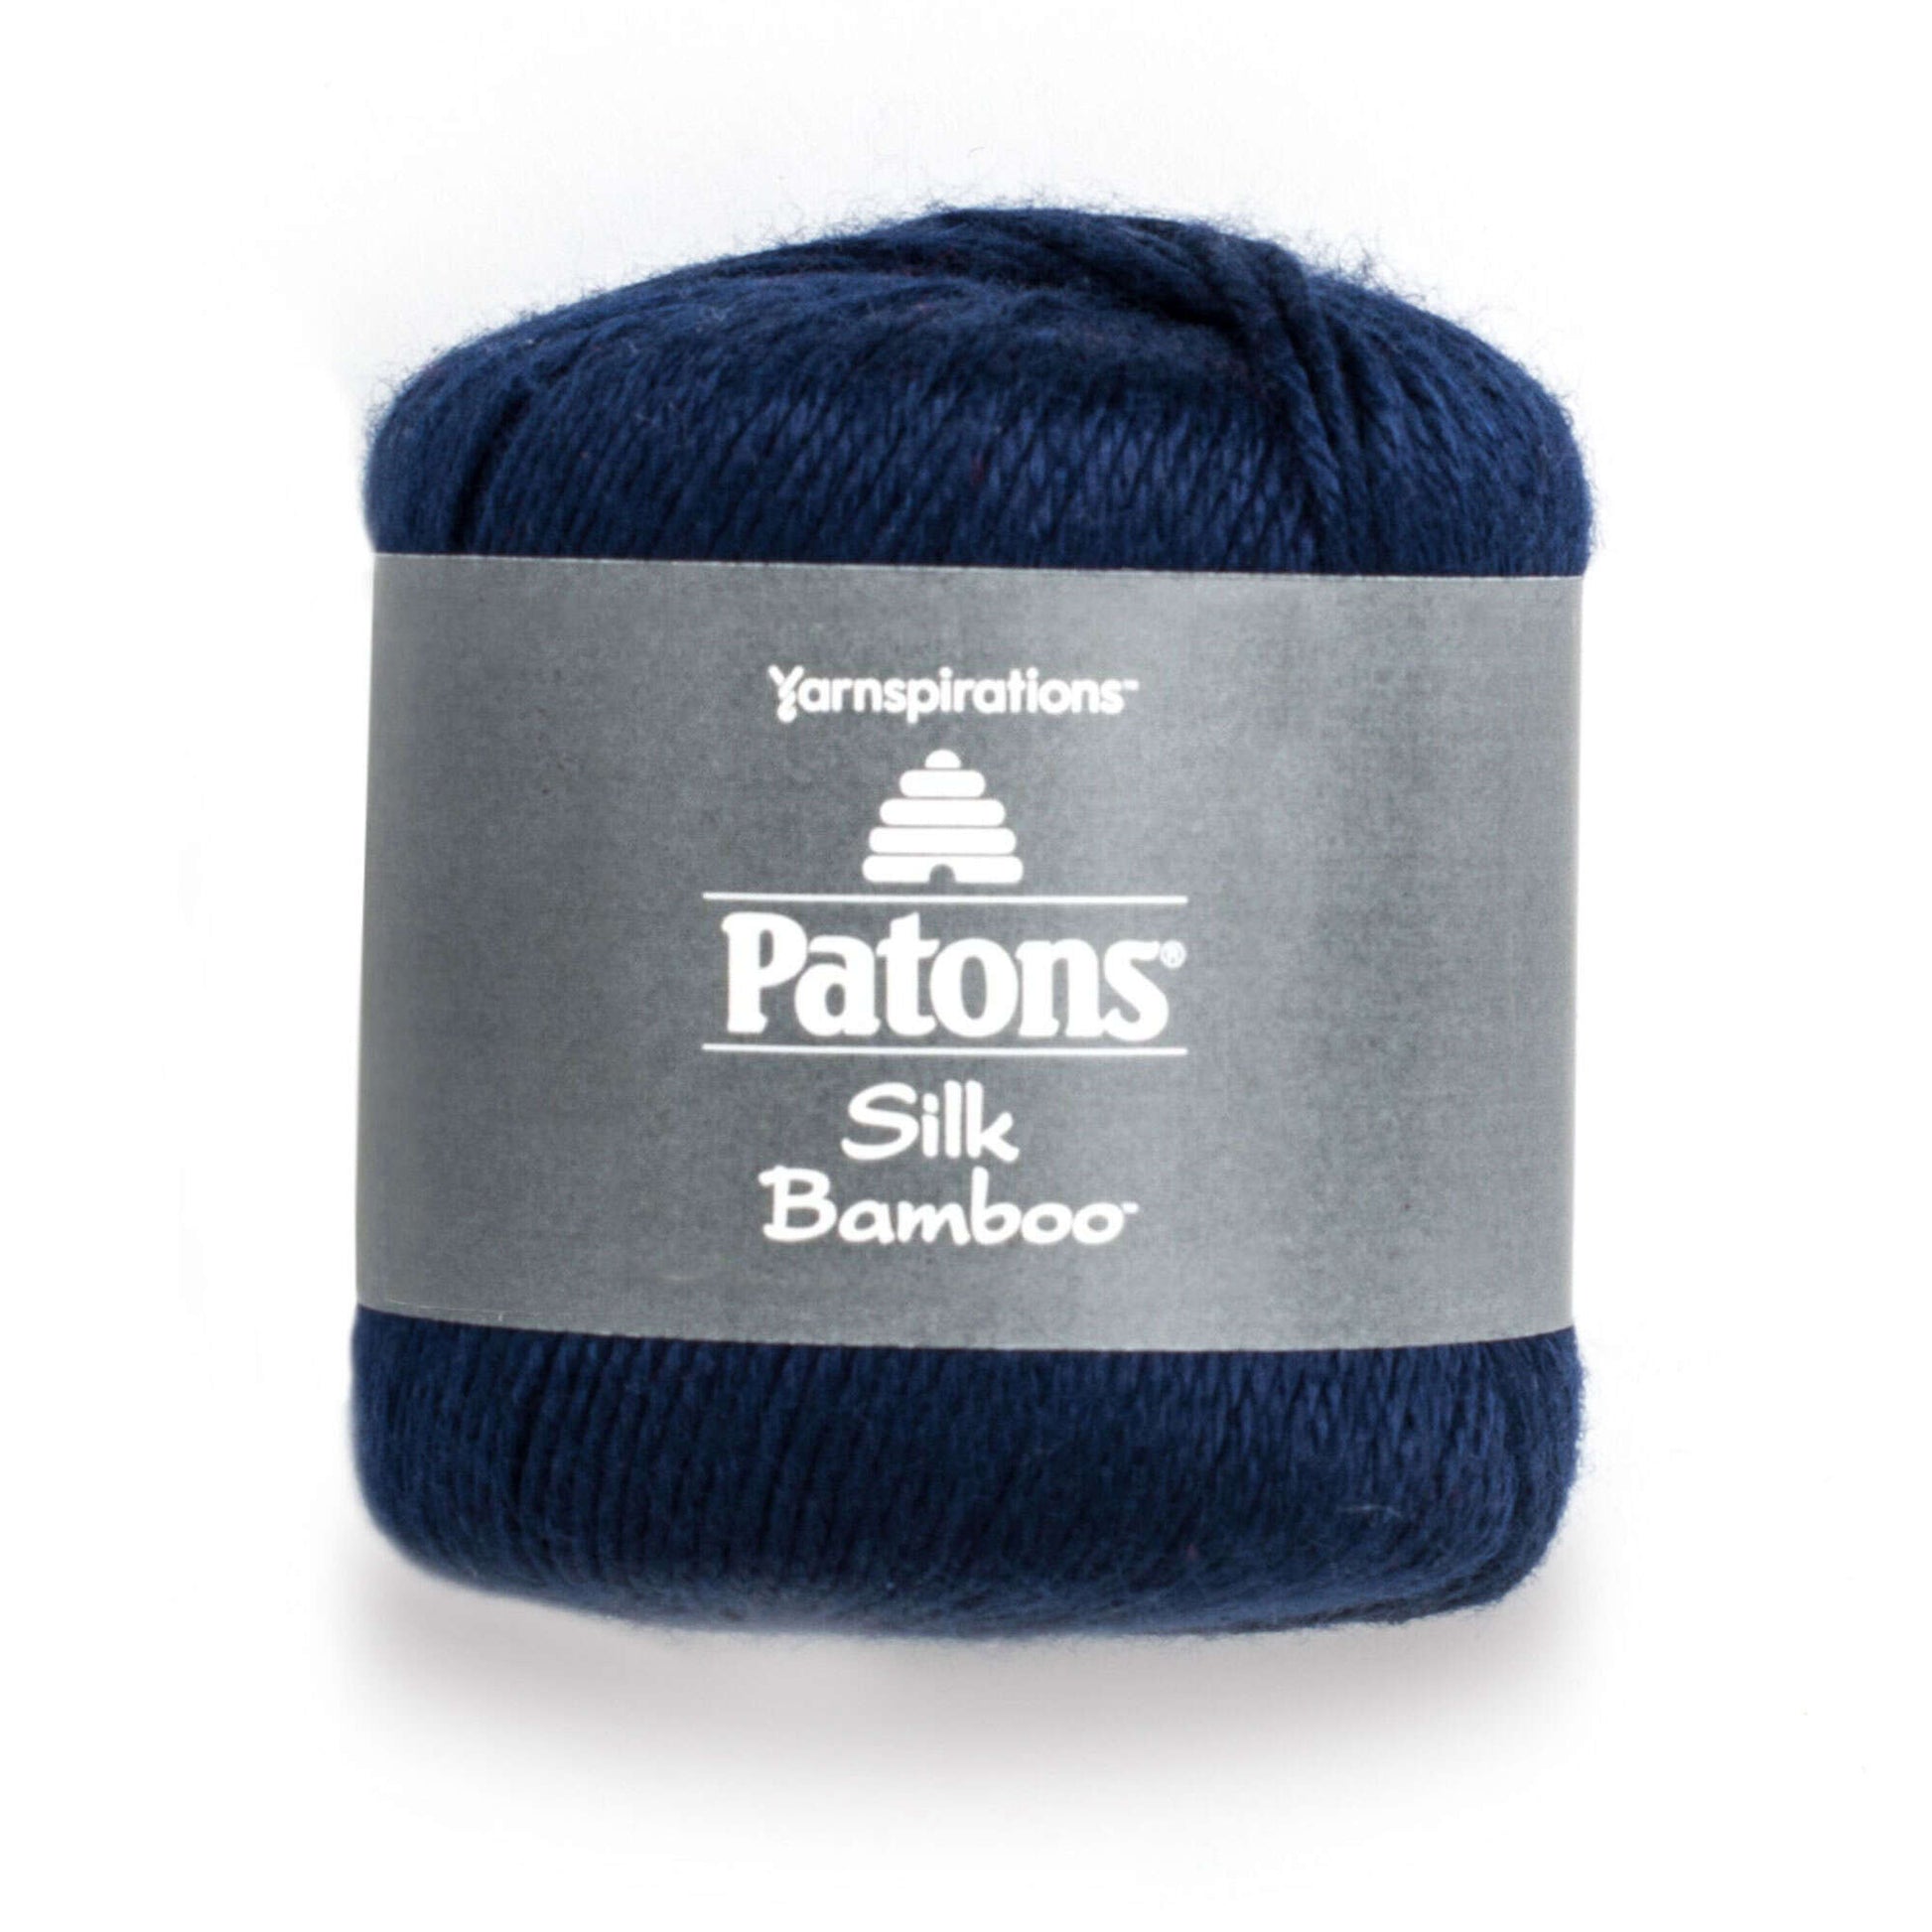 Patons Silk Bamboo Yarn - Discontinued Shades